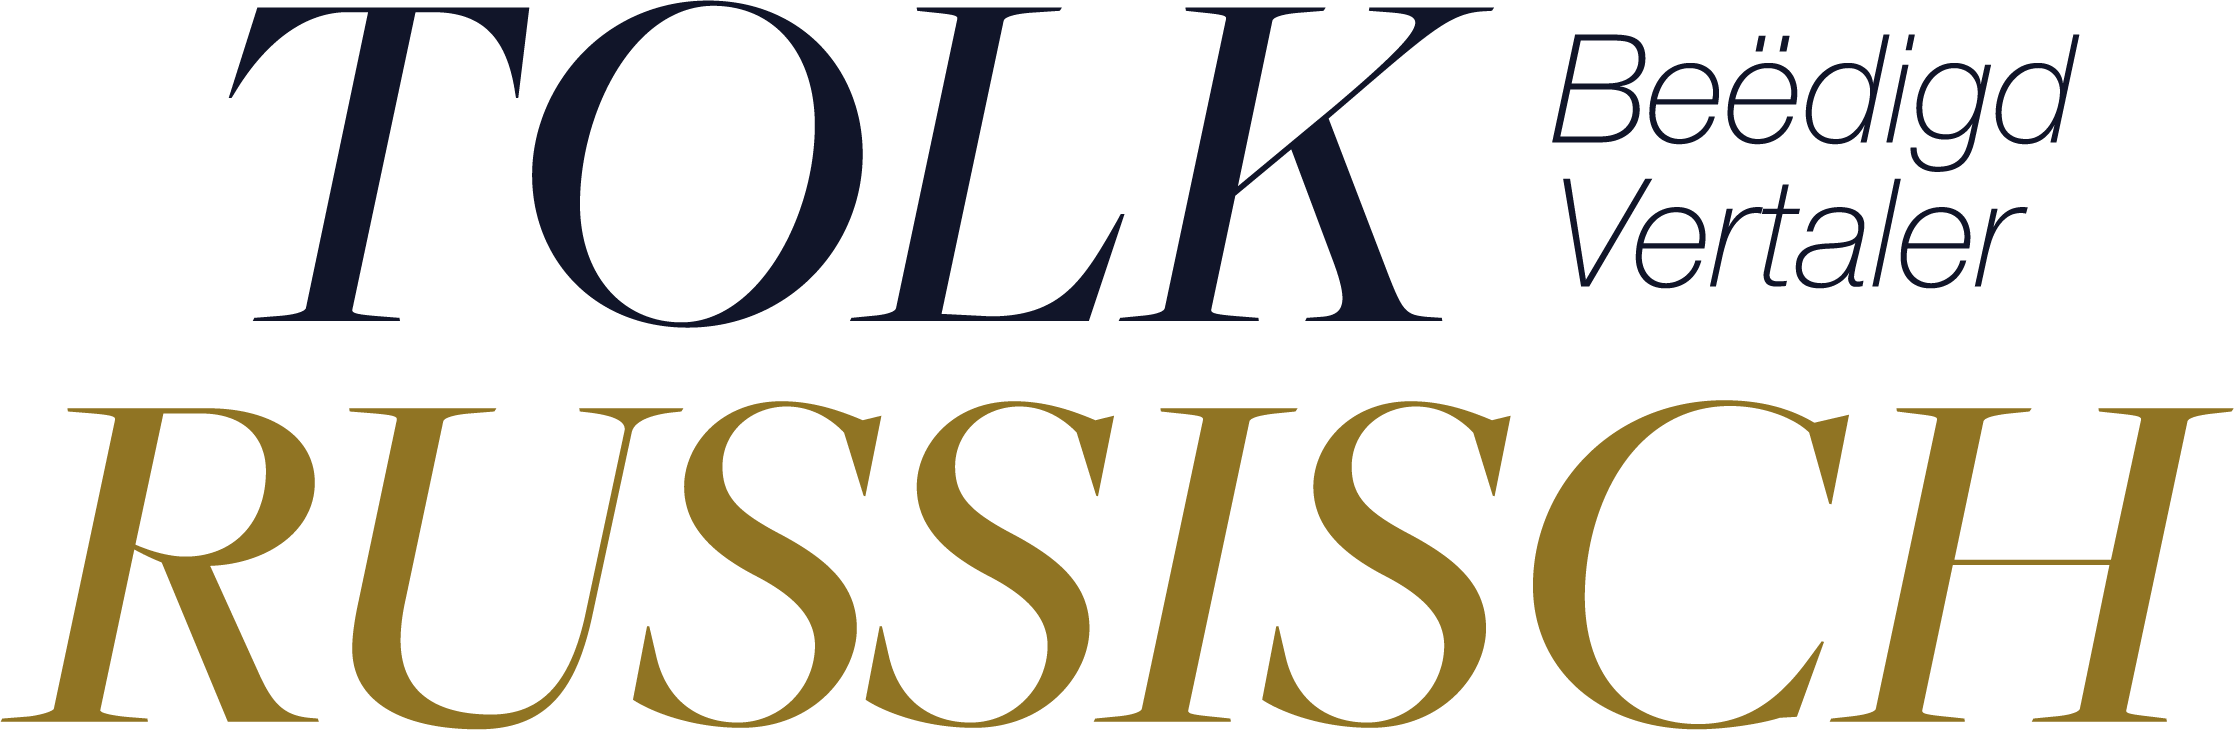 Tolkrussisch.be logo